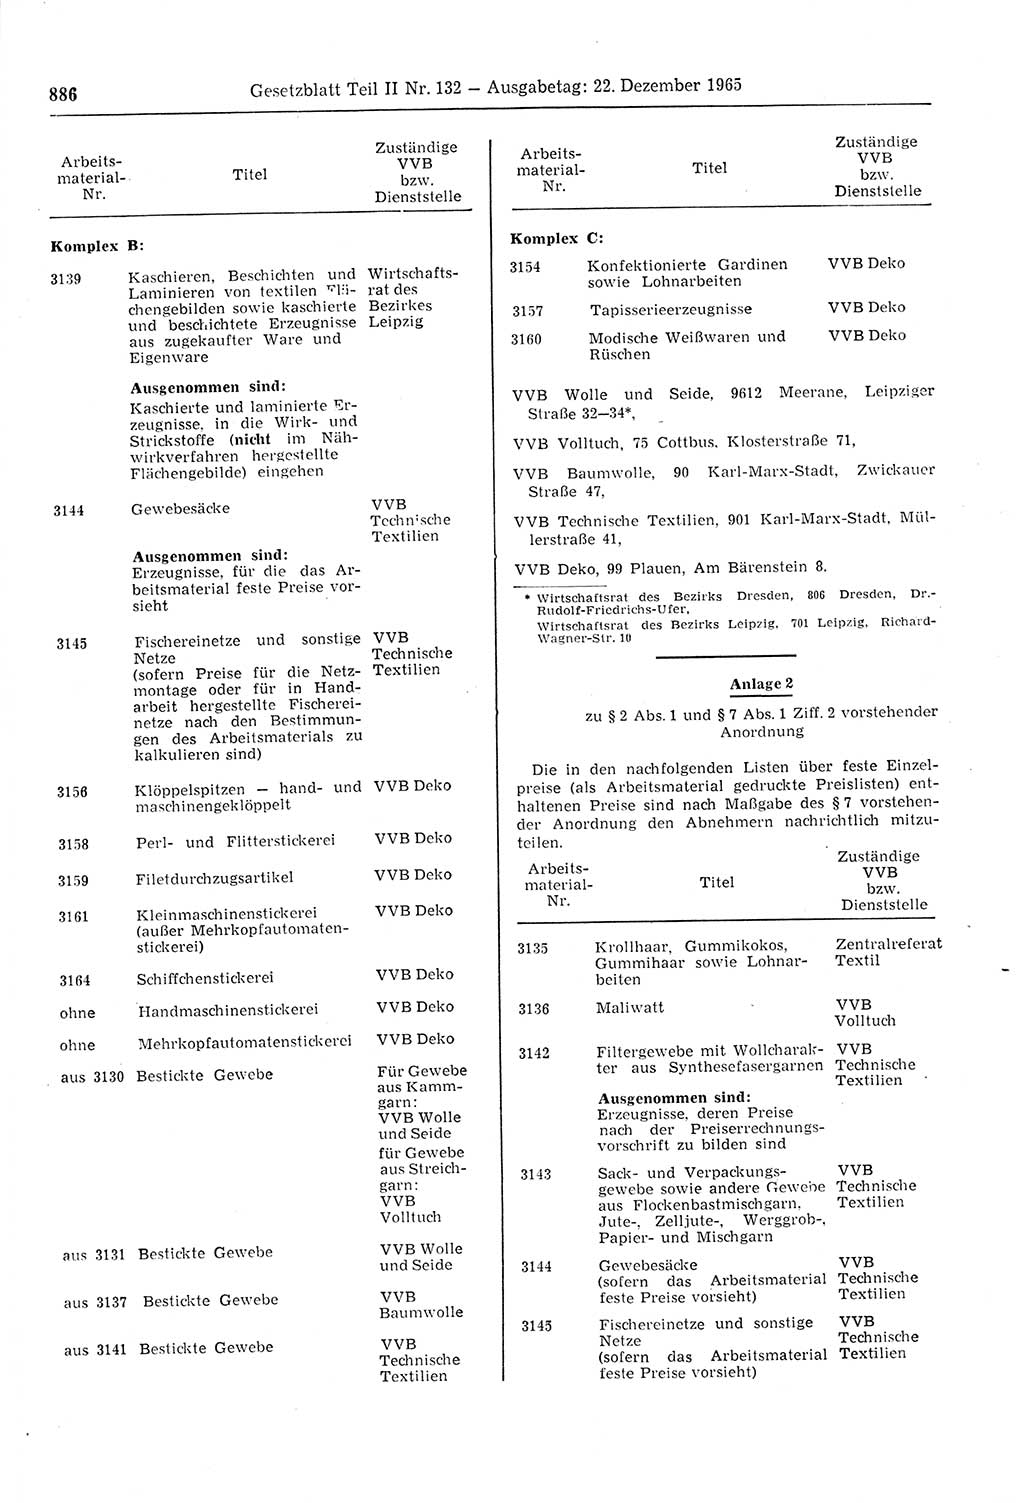 Gesetzblatt (GBl.) der Deutschen Demokratischen Republik (DDR) Teil ⅠⅠ 1965, Seite 886 (GBl. DDR ⅠⅠ 1965, S. 886)